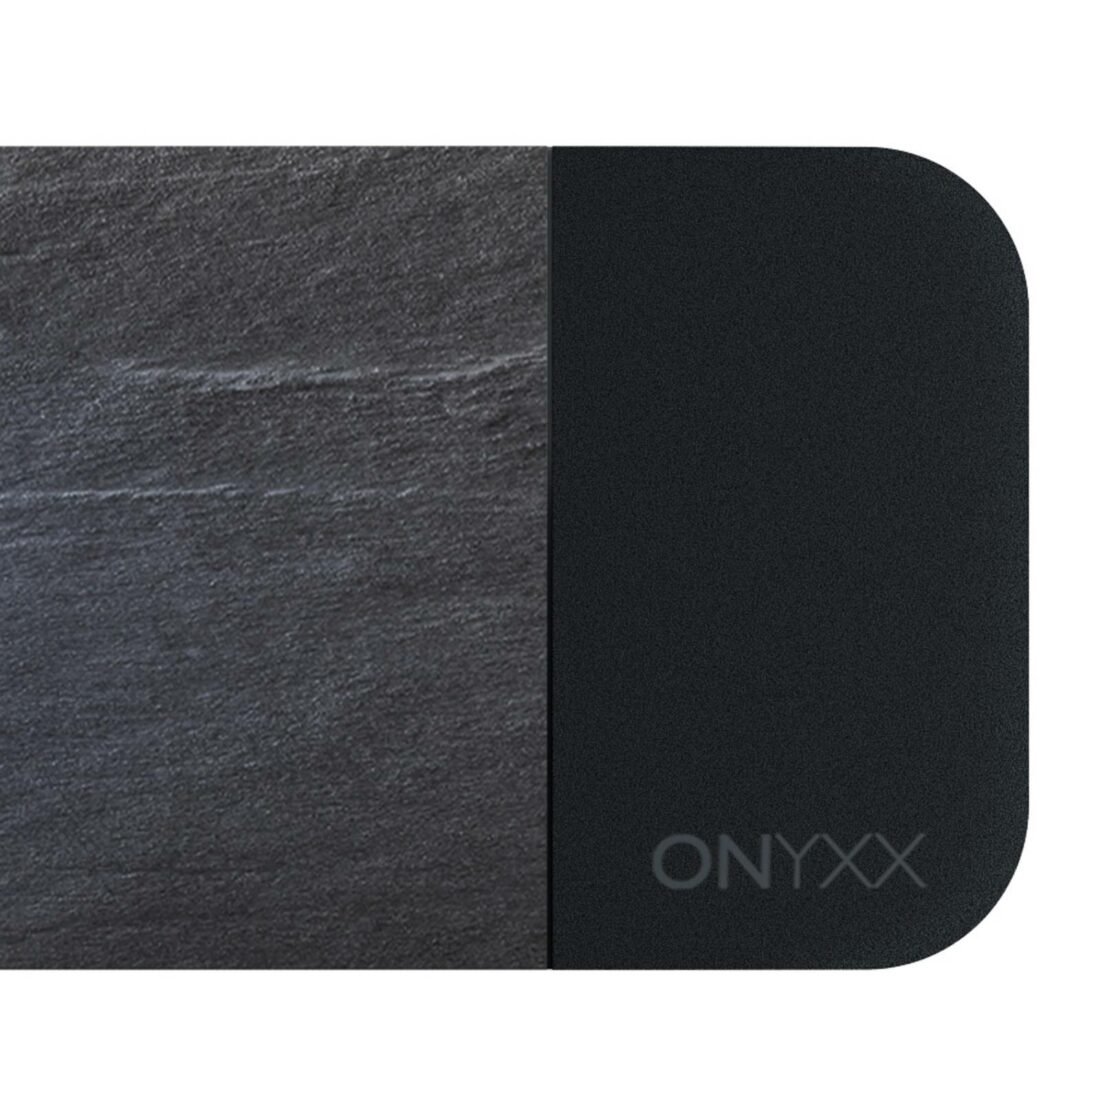 GRIMMEISEN Onyxx Linea Pro závěs břidlice/černá